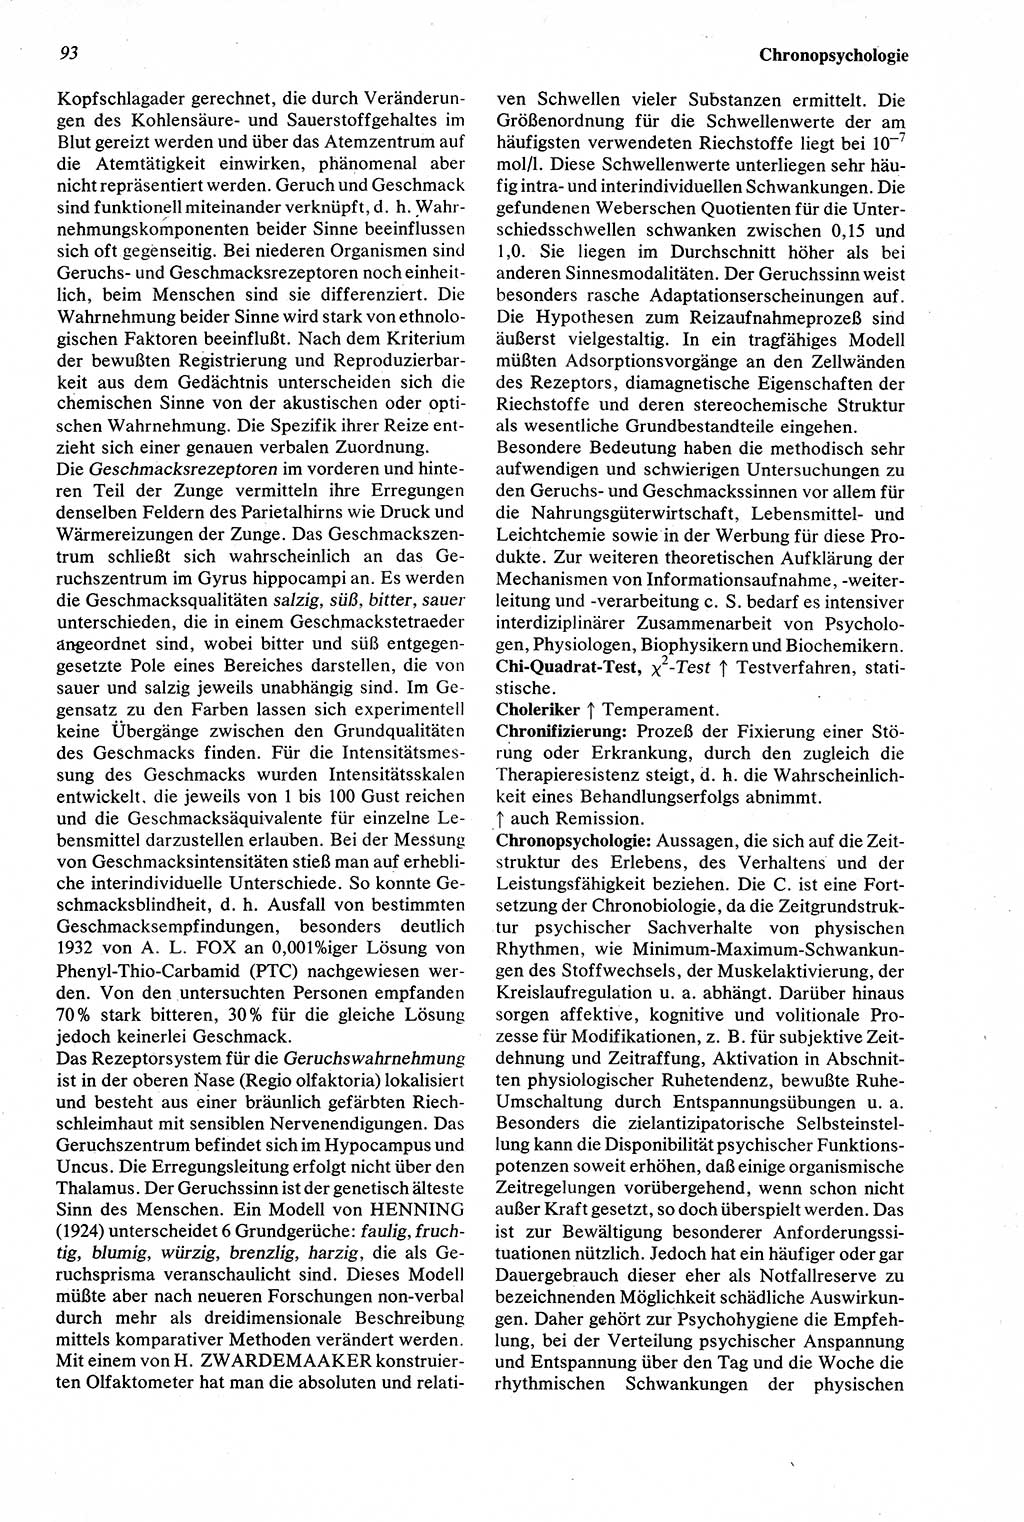 Wörterbuch der Psychologie [Deutsche Demokratische Republik (DDR)] 1976, Seite 93 (Wb. Psych. DDR 1976, S. 93)